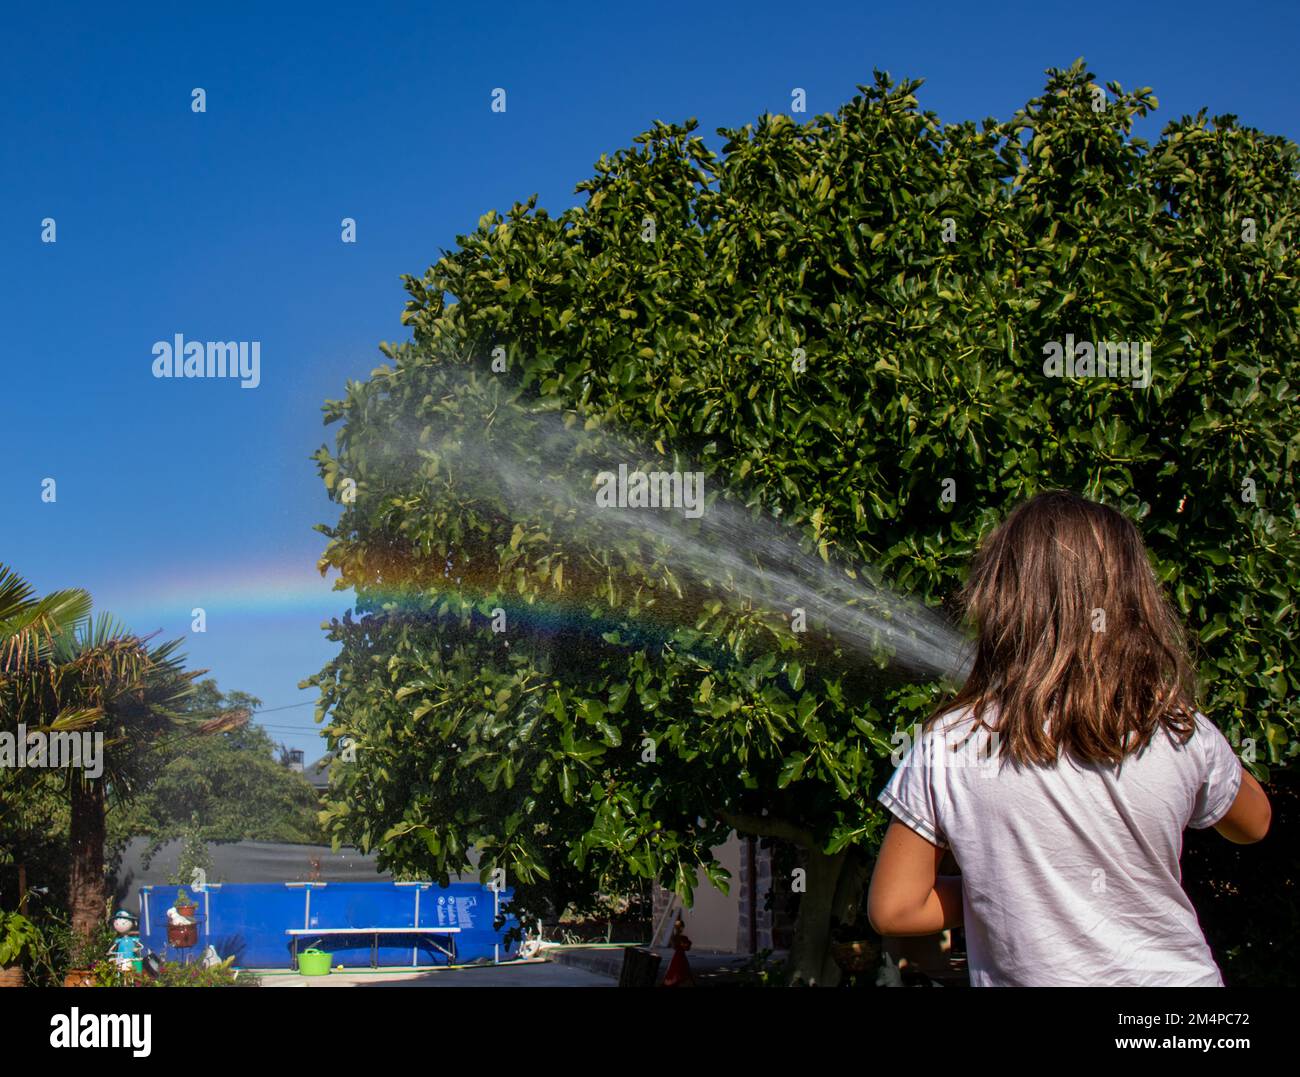 Una niña con el chorro de agua de una manguera, provoca la formación de un arcoíris debido a la refracción de la luz Solar en las gotas de agua rociad Banque D'Images